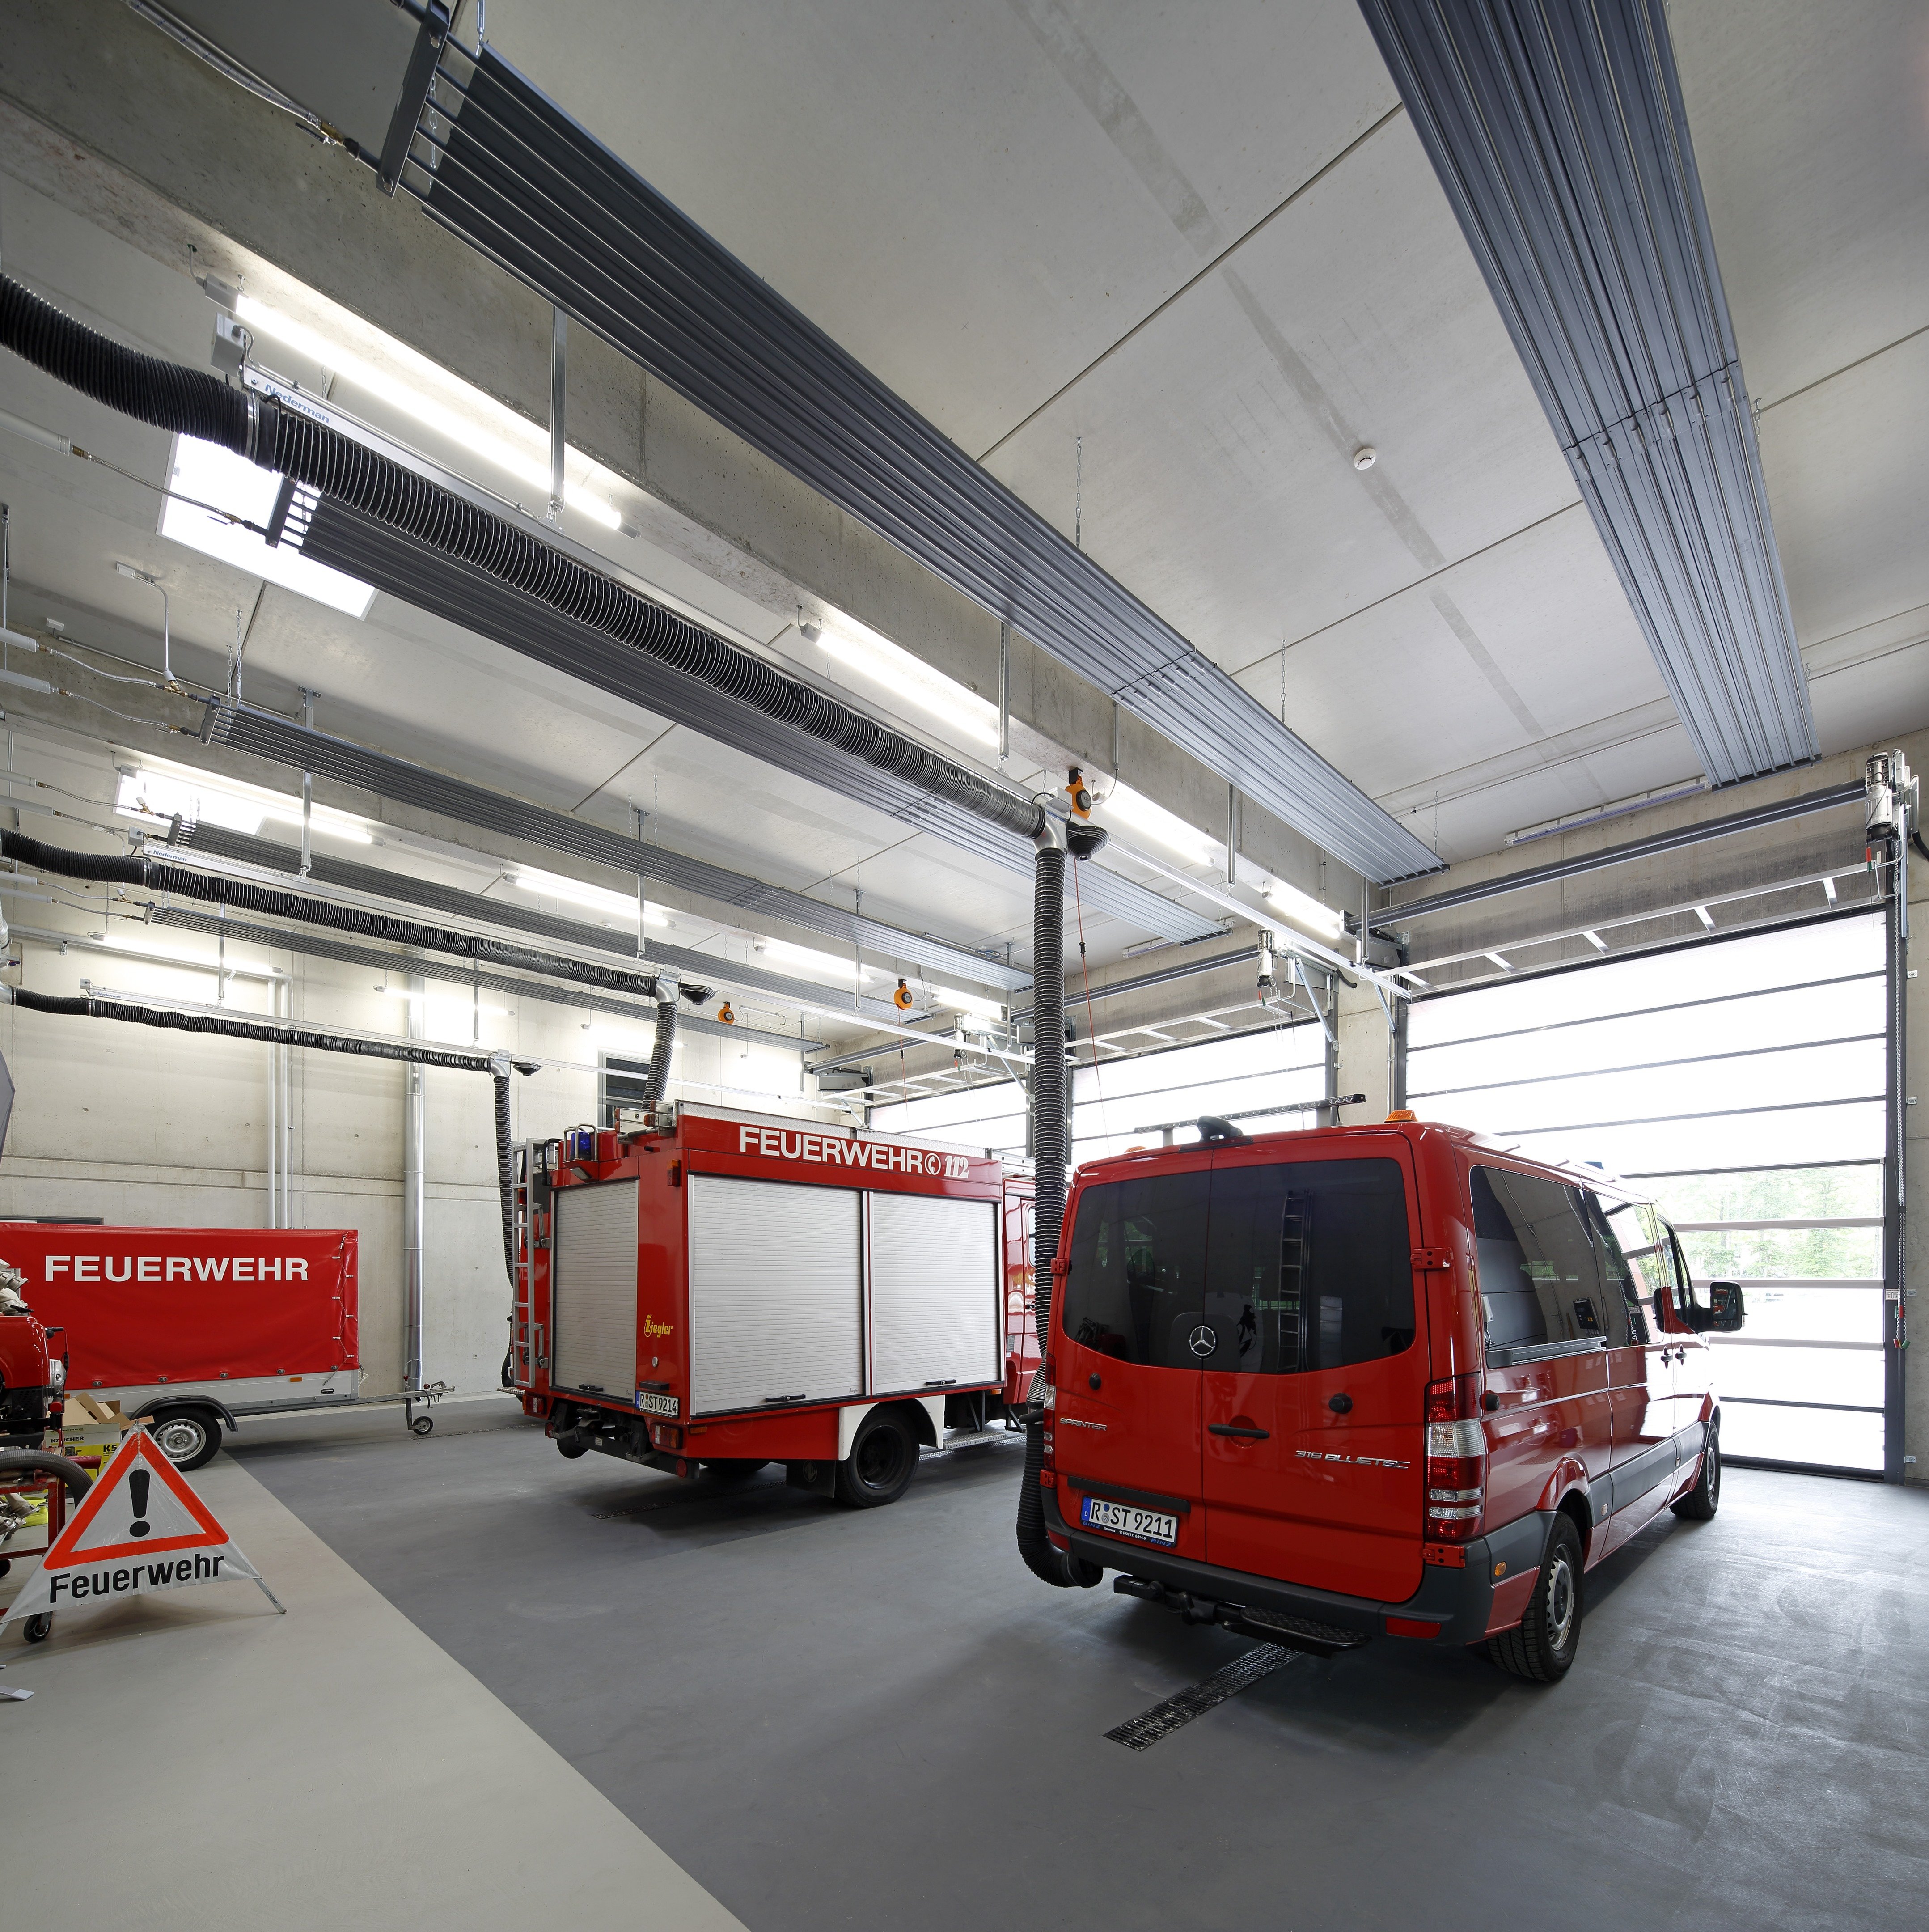 Fire station- Nueva estación de bomberos- Nuovi vigili del fuoco- Ny brandkår- Neubau Feuerwehr, HochBauAmt Regensburg Germany-42